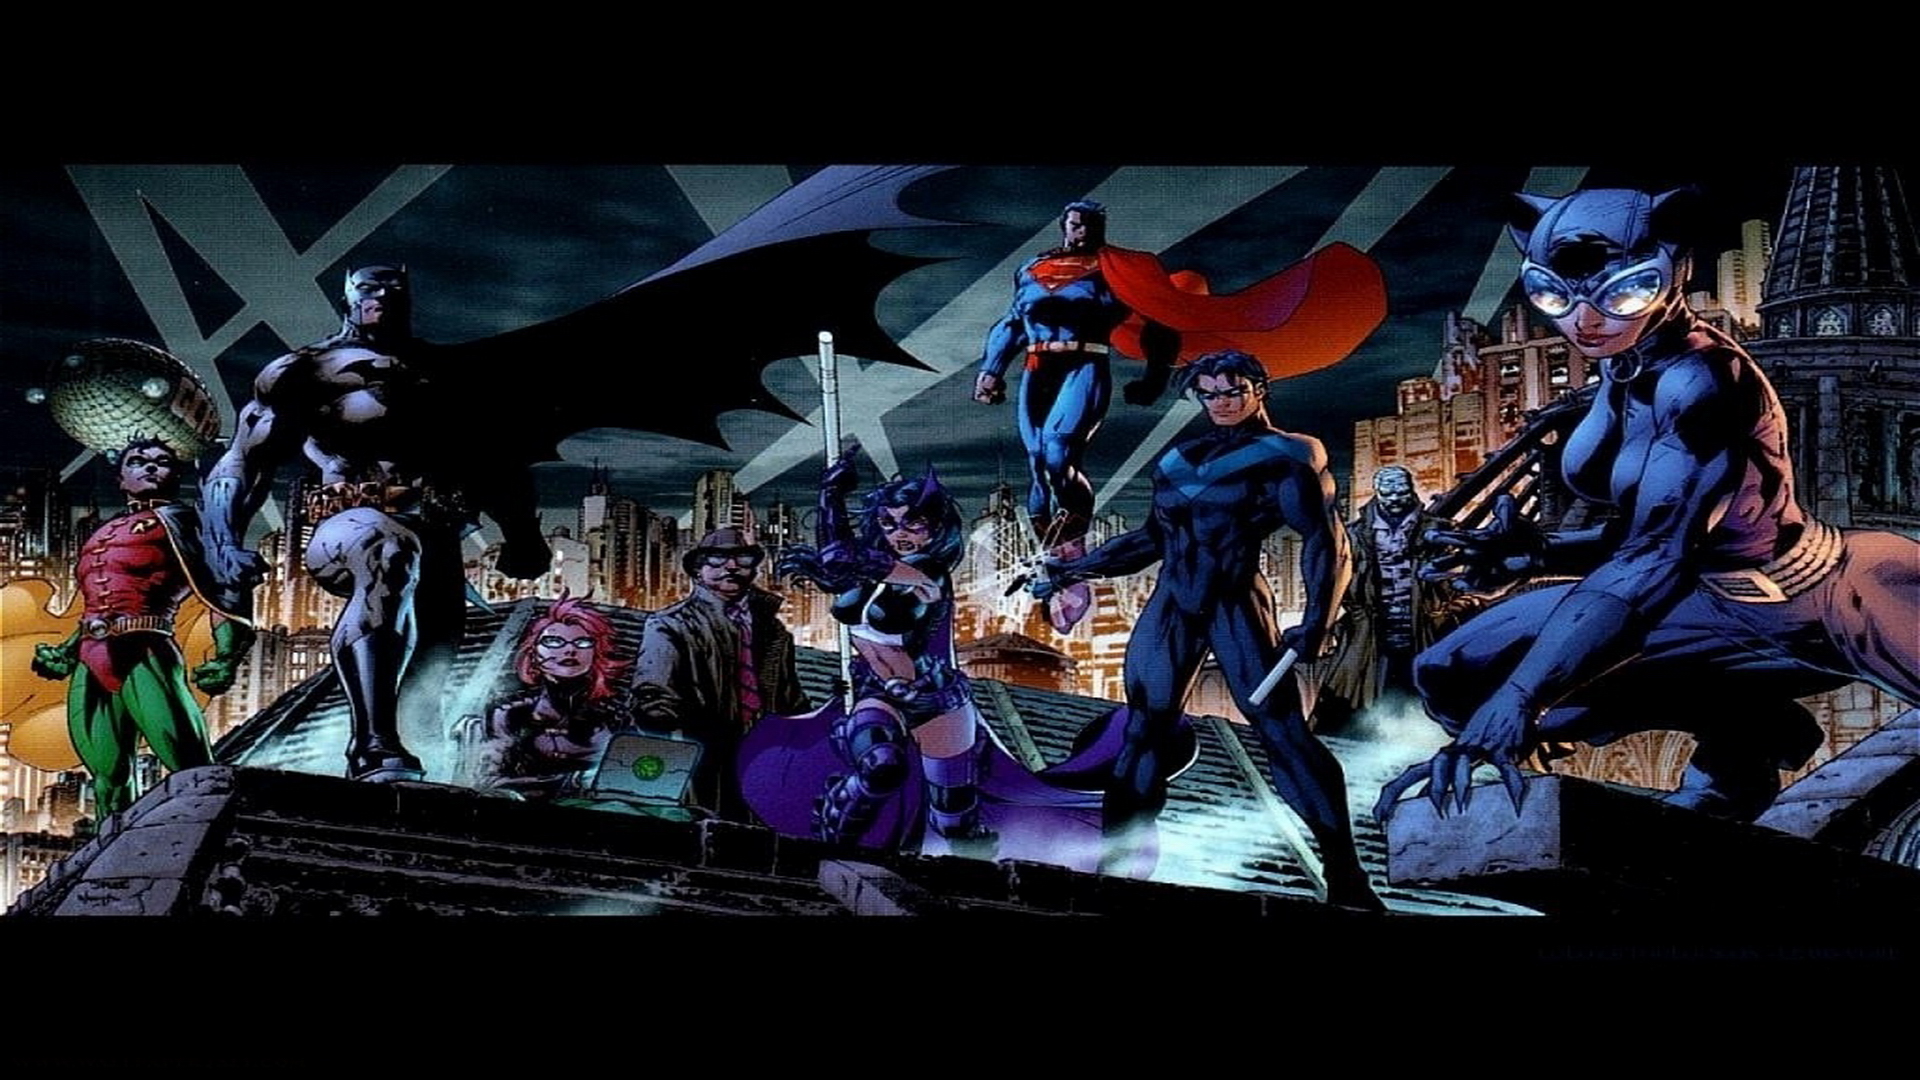 DC Comics Wallpapers Batman s Allies dc comics 9263341 1024 768 1920x1080